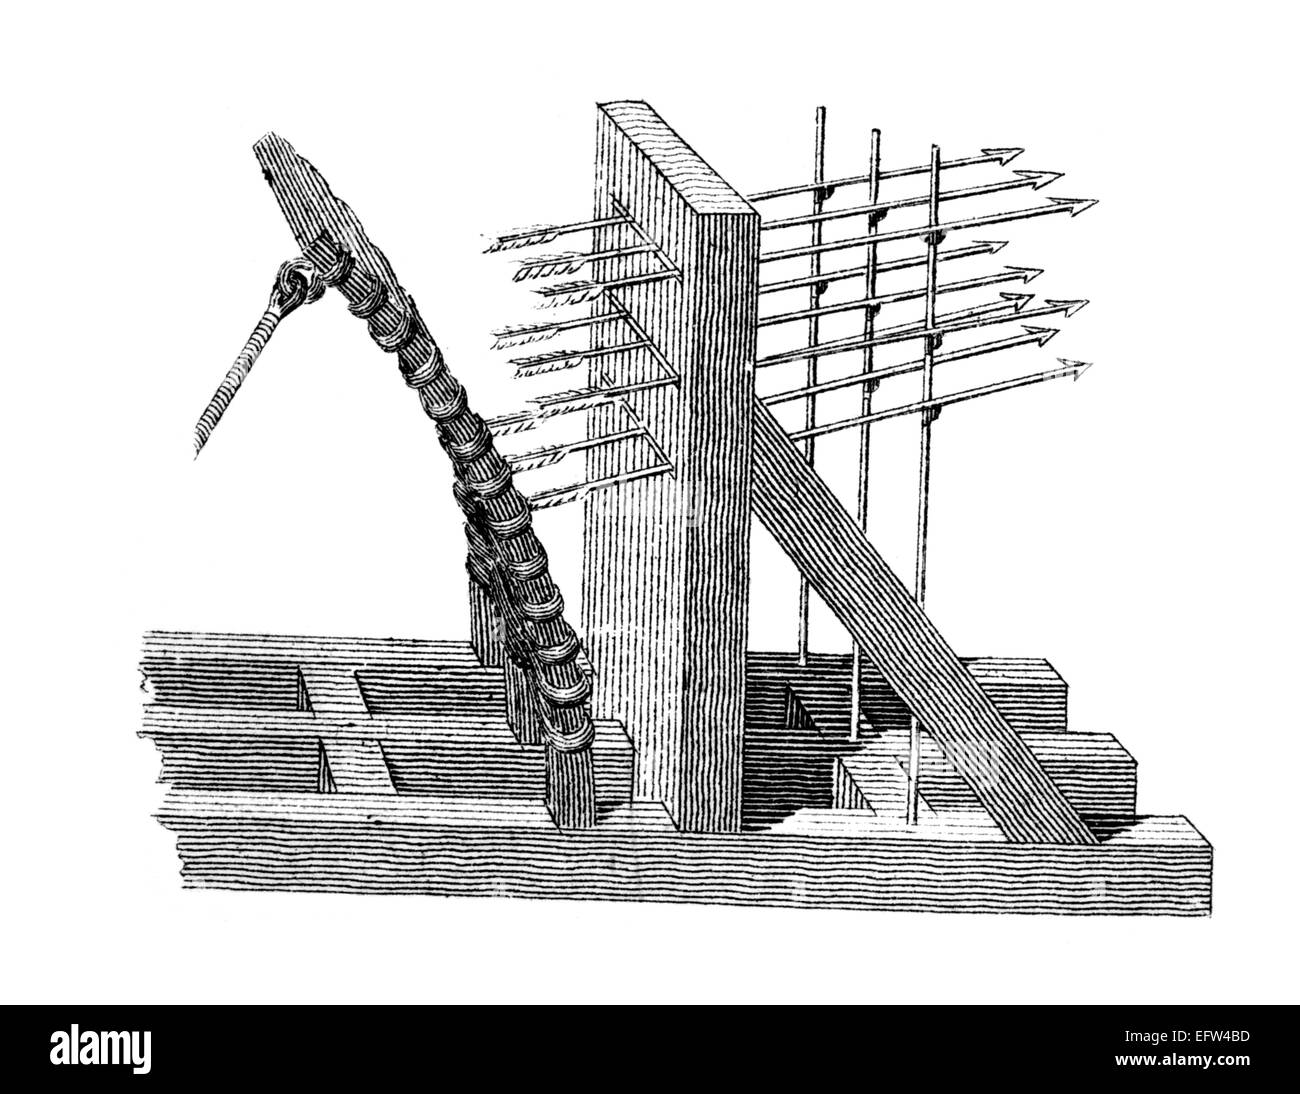 Incisione in stile vittoriano di un balista medievale. Restaurata digitalmente immagine da una metà del XIX secolo enciclopedia. Foto Stock